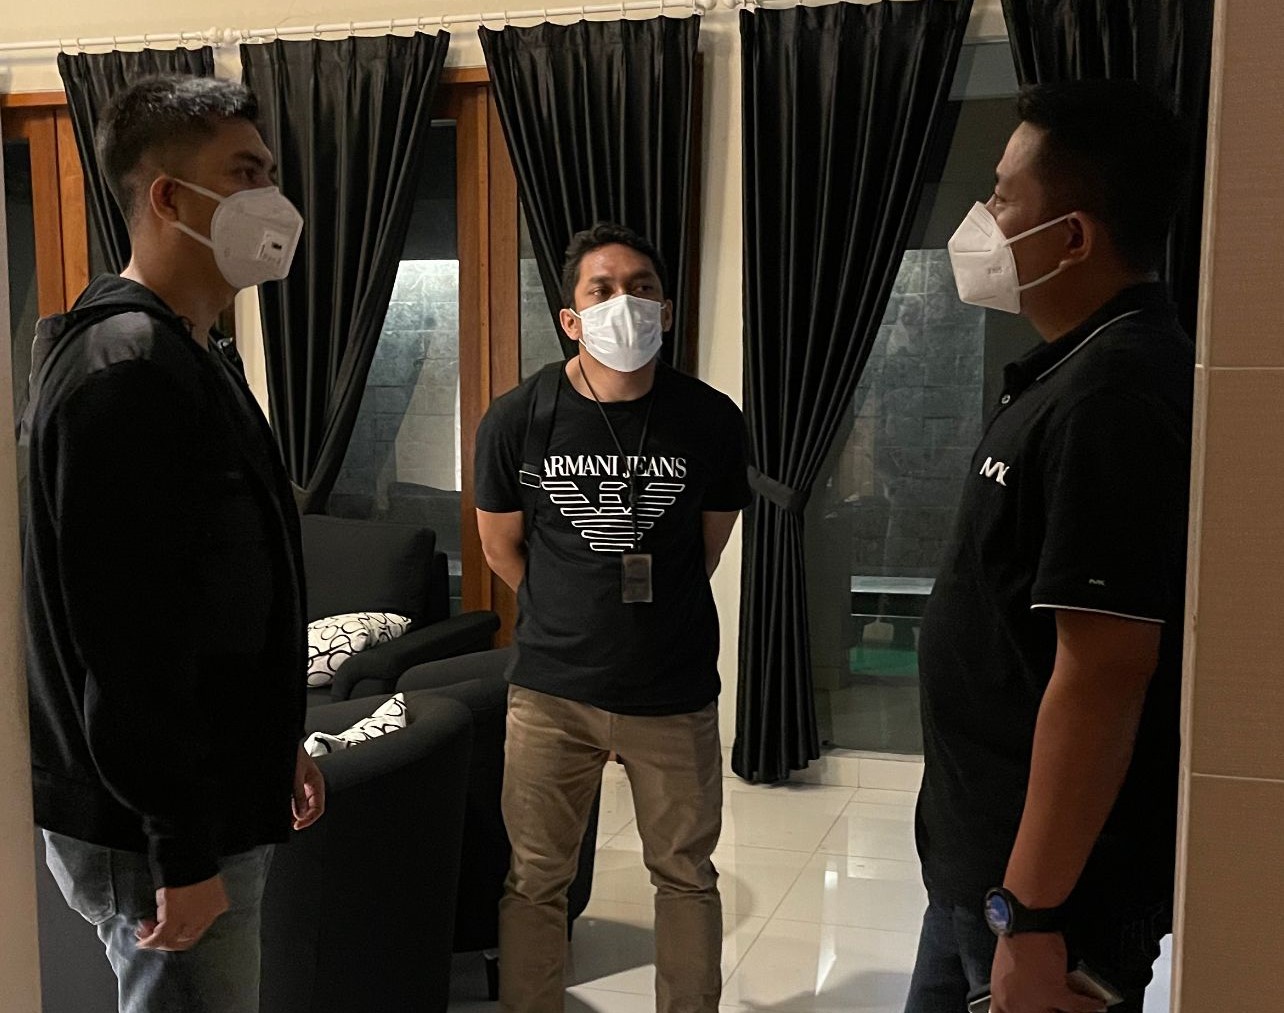  Anggota Satuan Reserse Narkoba Polres Metro Jakarta Barat menggrebek rumah mewah yang dijadikan pabrik pembuatan narkoba jenis sabu di komplek perumahan mewah, kawasan Karawaci, Tangerang. (Foto: TV Polri). 